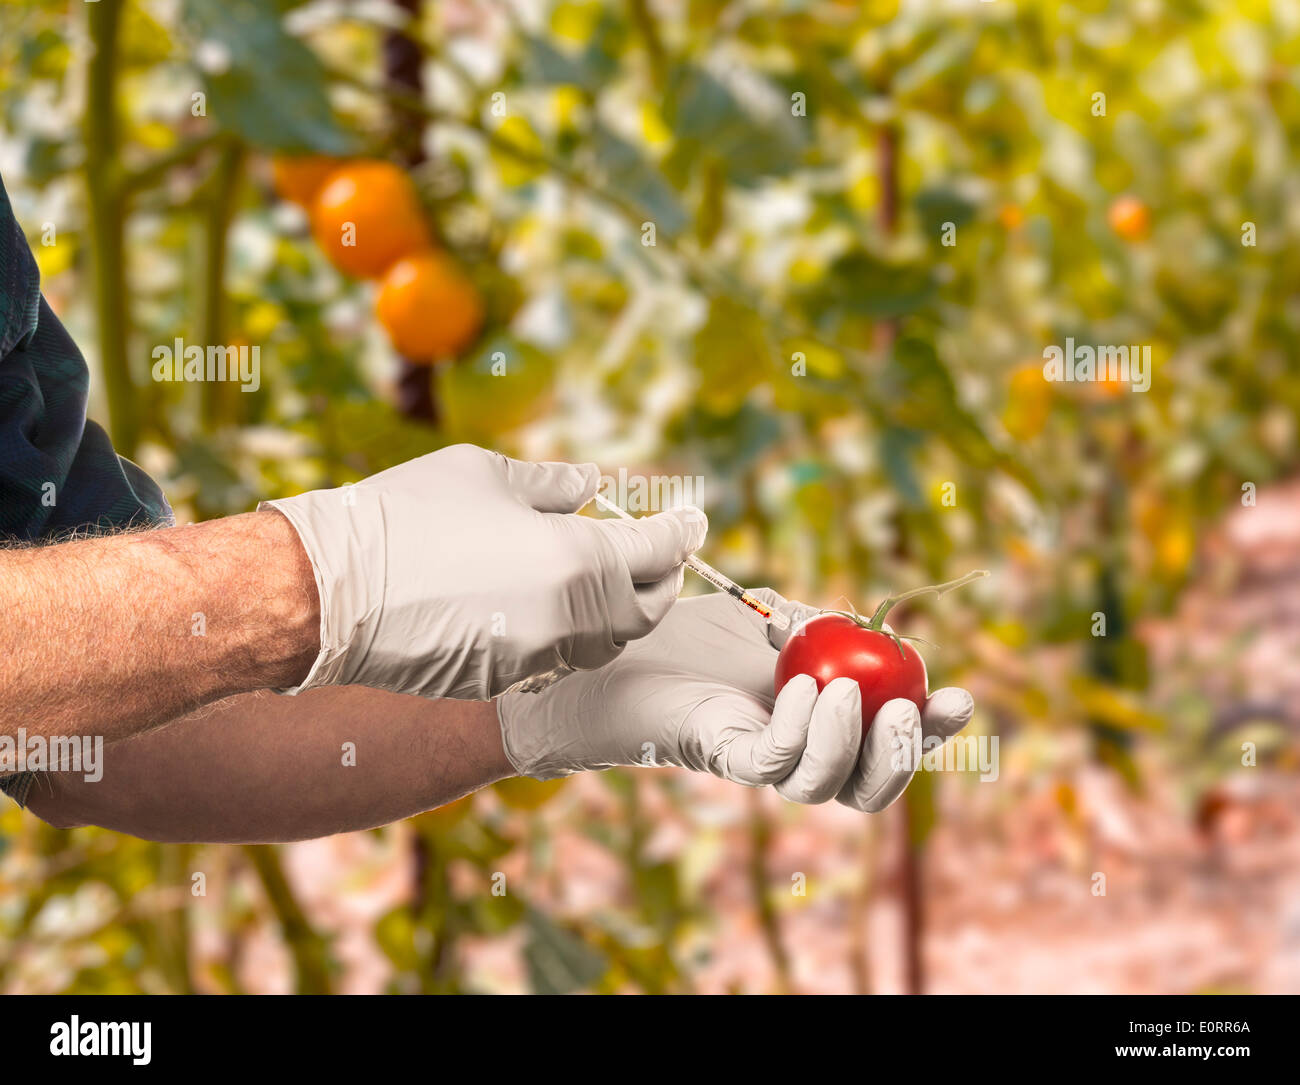 Sciences - Les organismes génétiquement modifiés - concept scientifique l'injection de liquide dans une tomate en plein air Banque D'Images